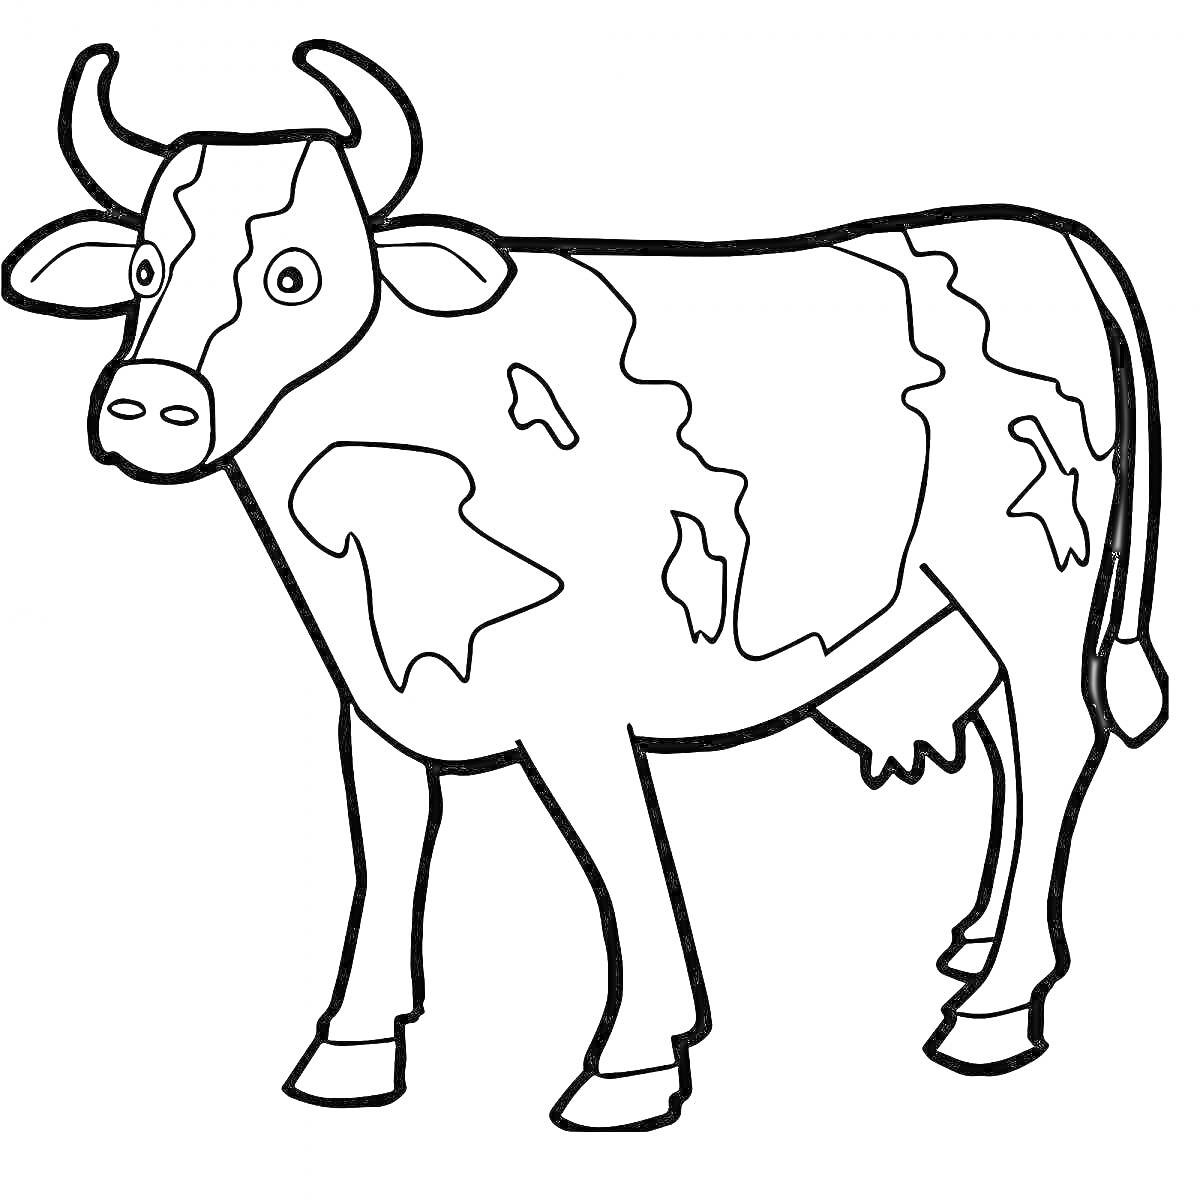 Раскраска корова с рогами, пятна на теле